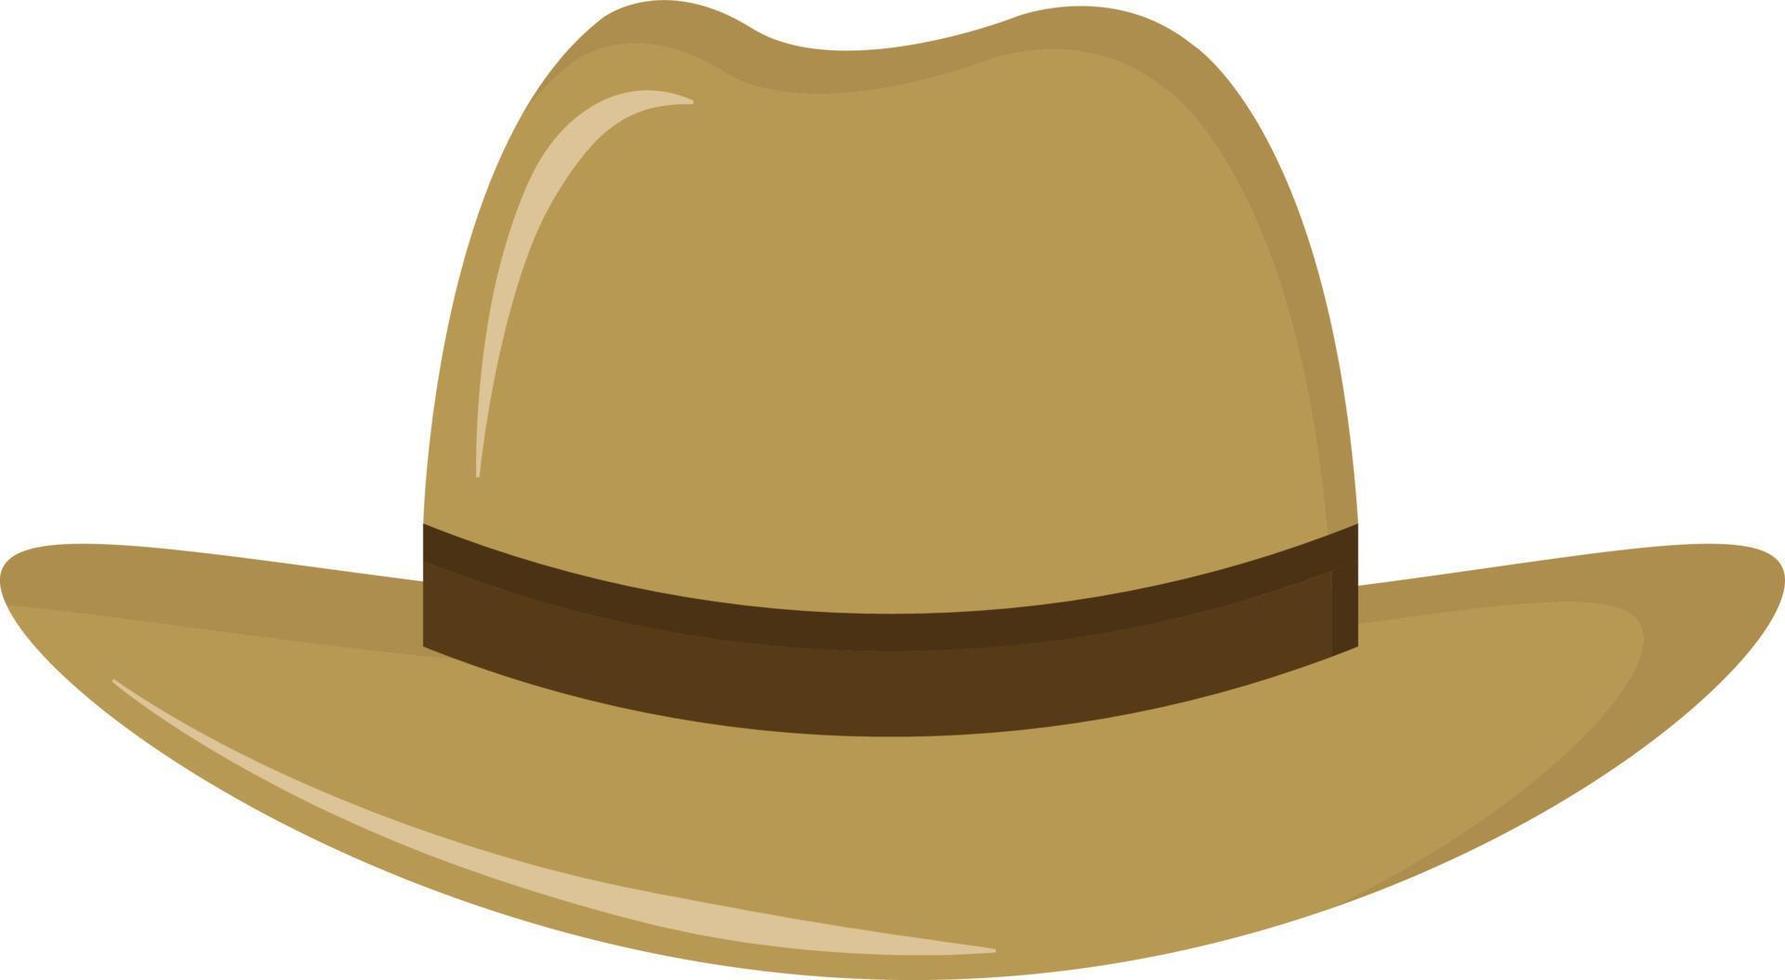 sombrero de granjero, ilustración, vector sobre fondo blanco.